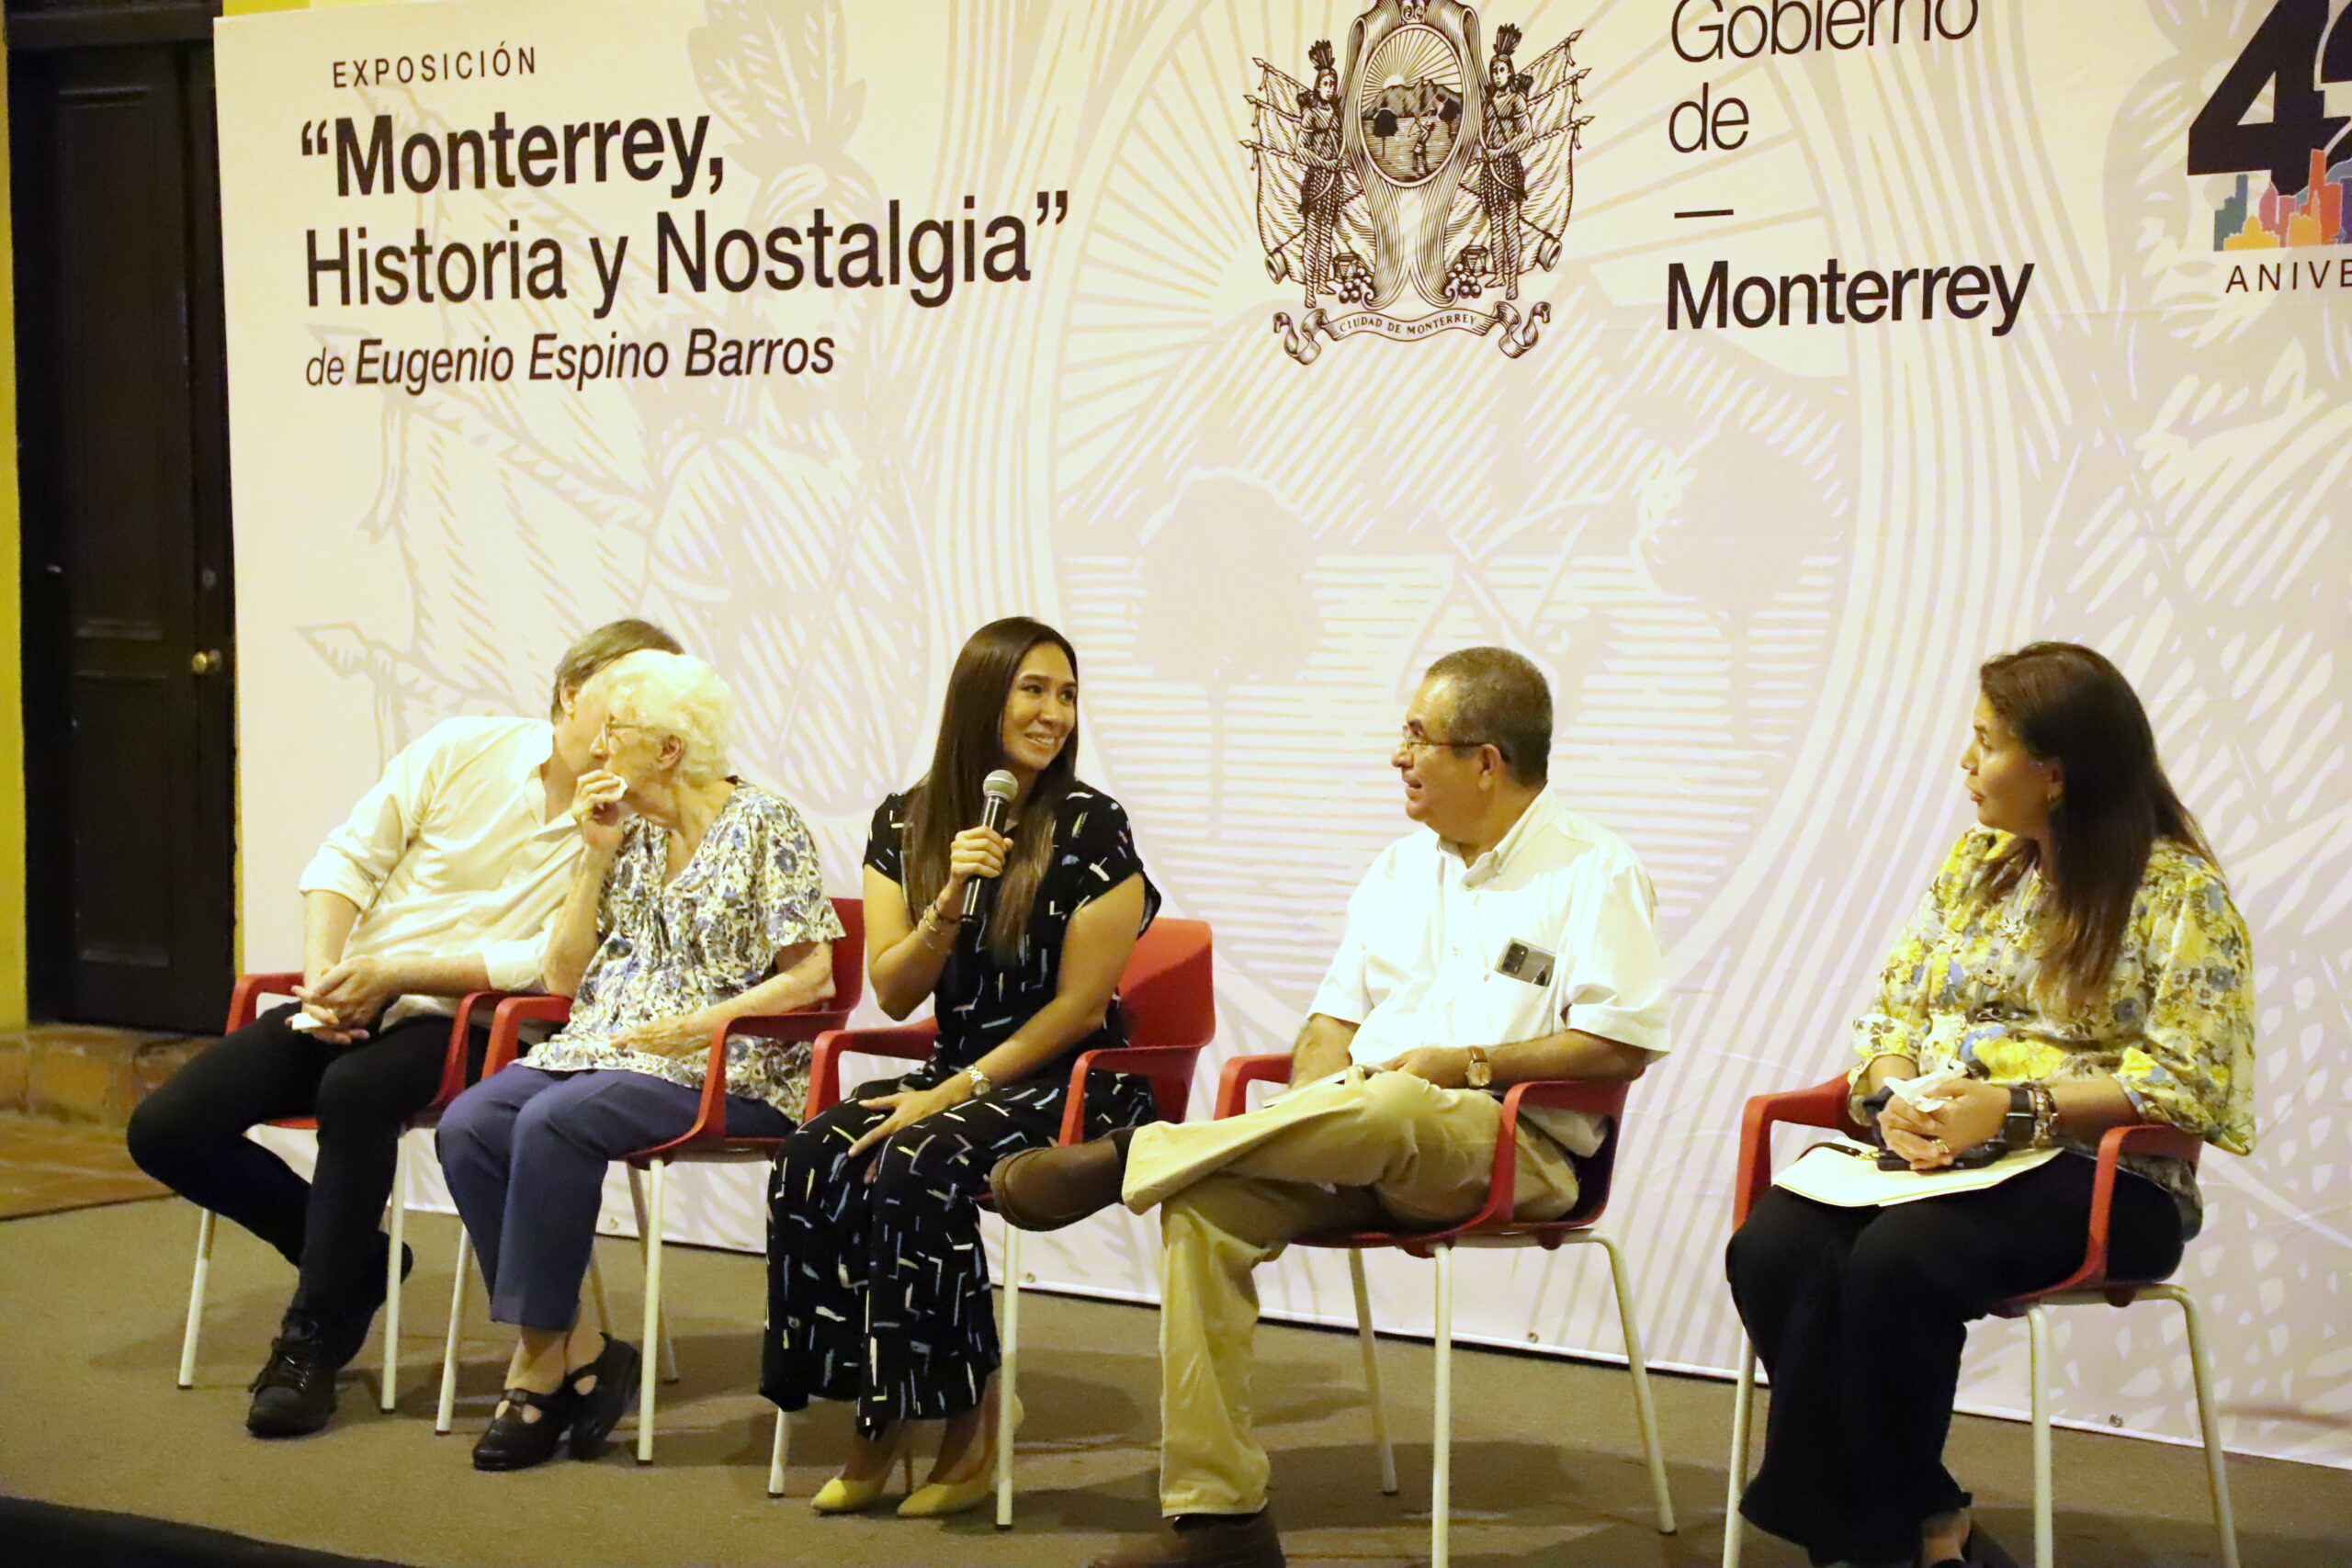 Inauguran exposición “Monterrey, historia y nostalgia” de Eugenio Espino Barros